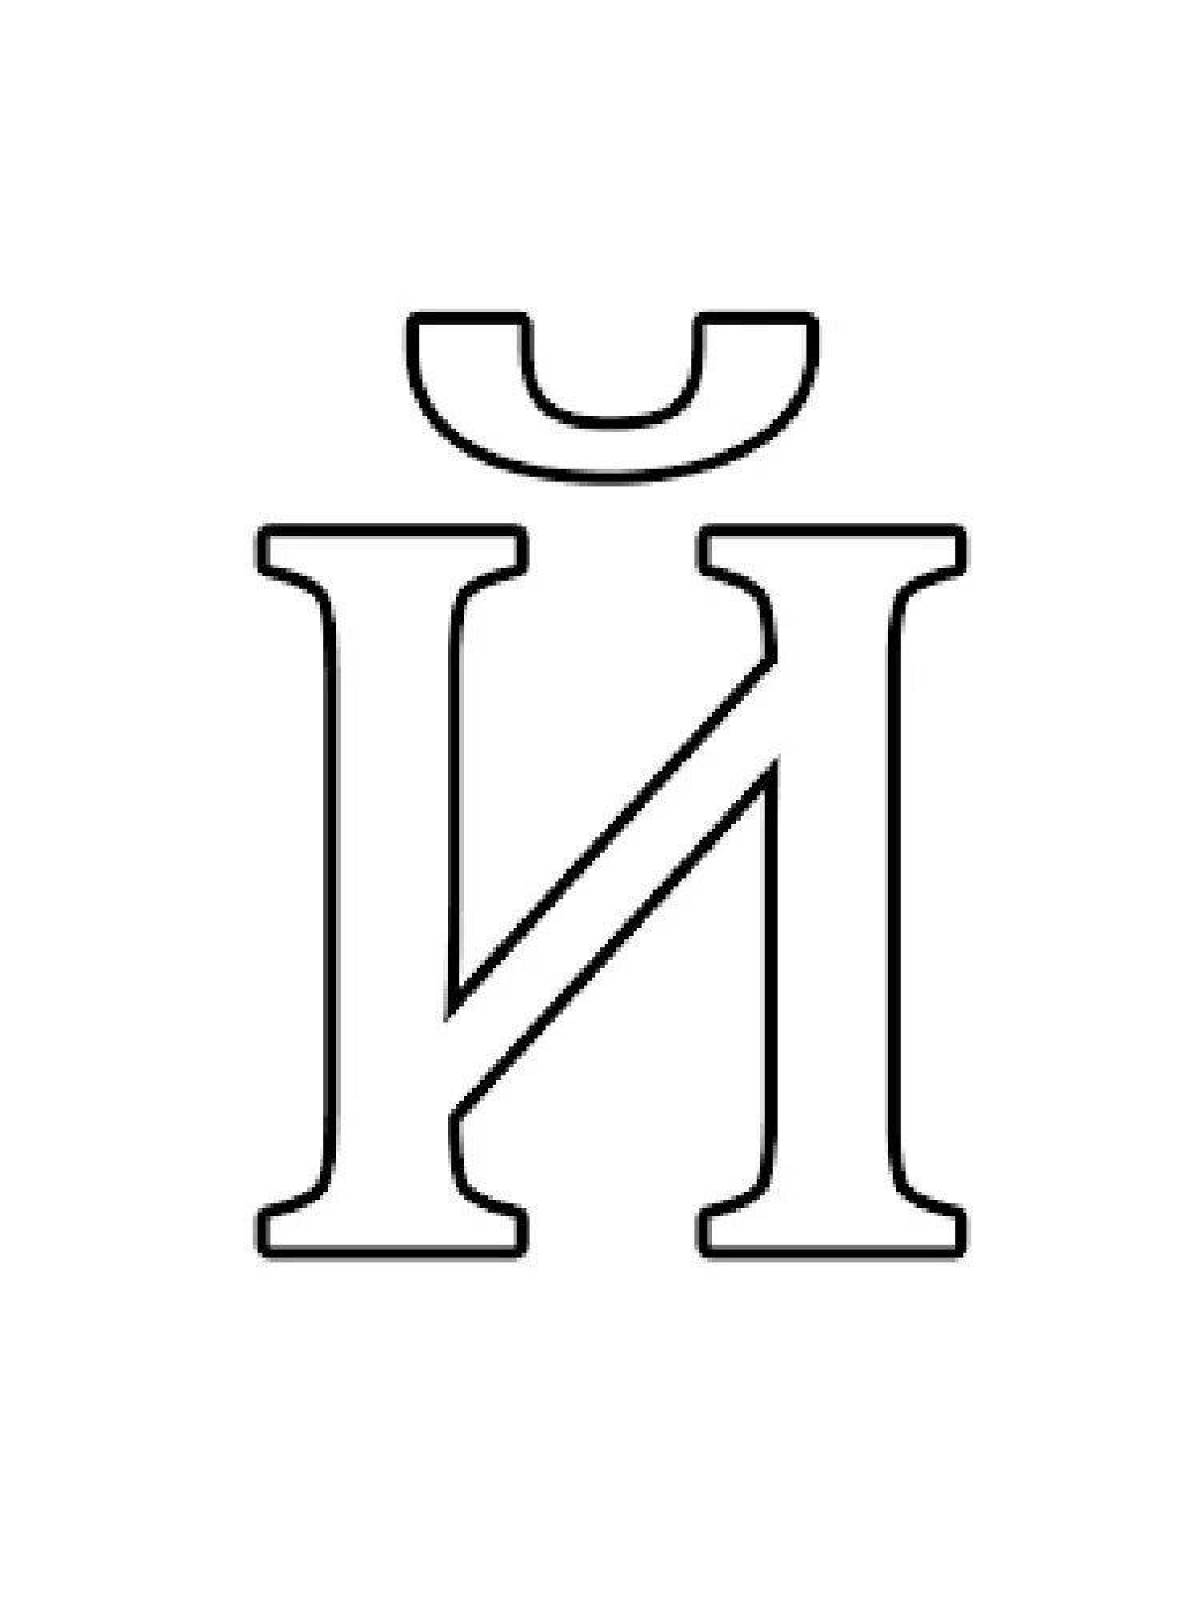 Сложные раскраски буквы русского алфавита по отдельности